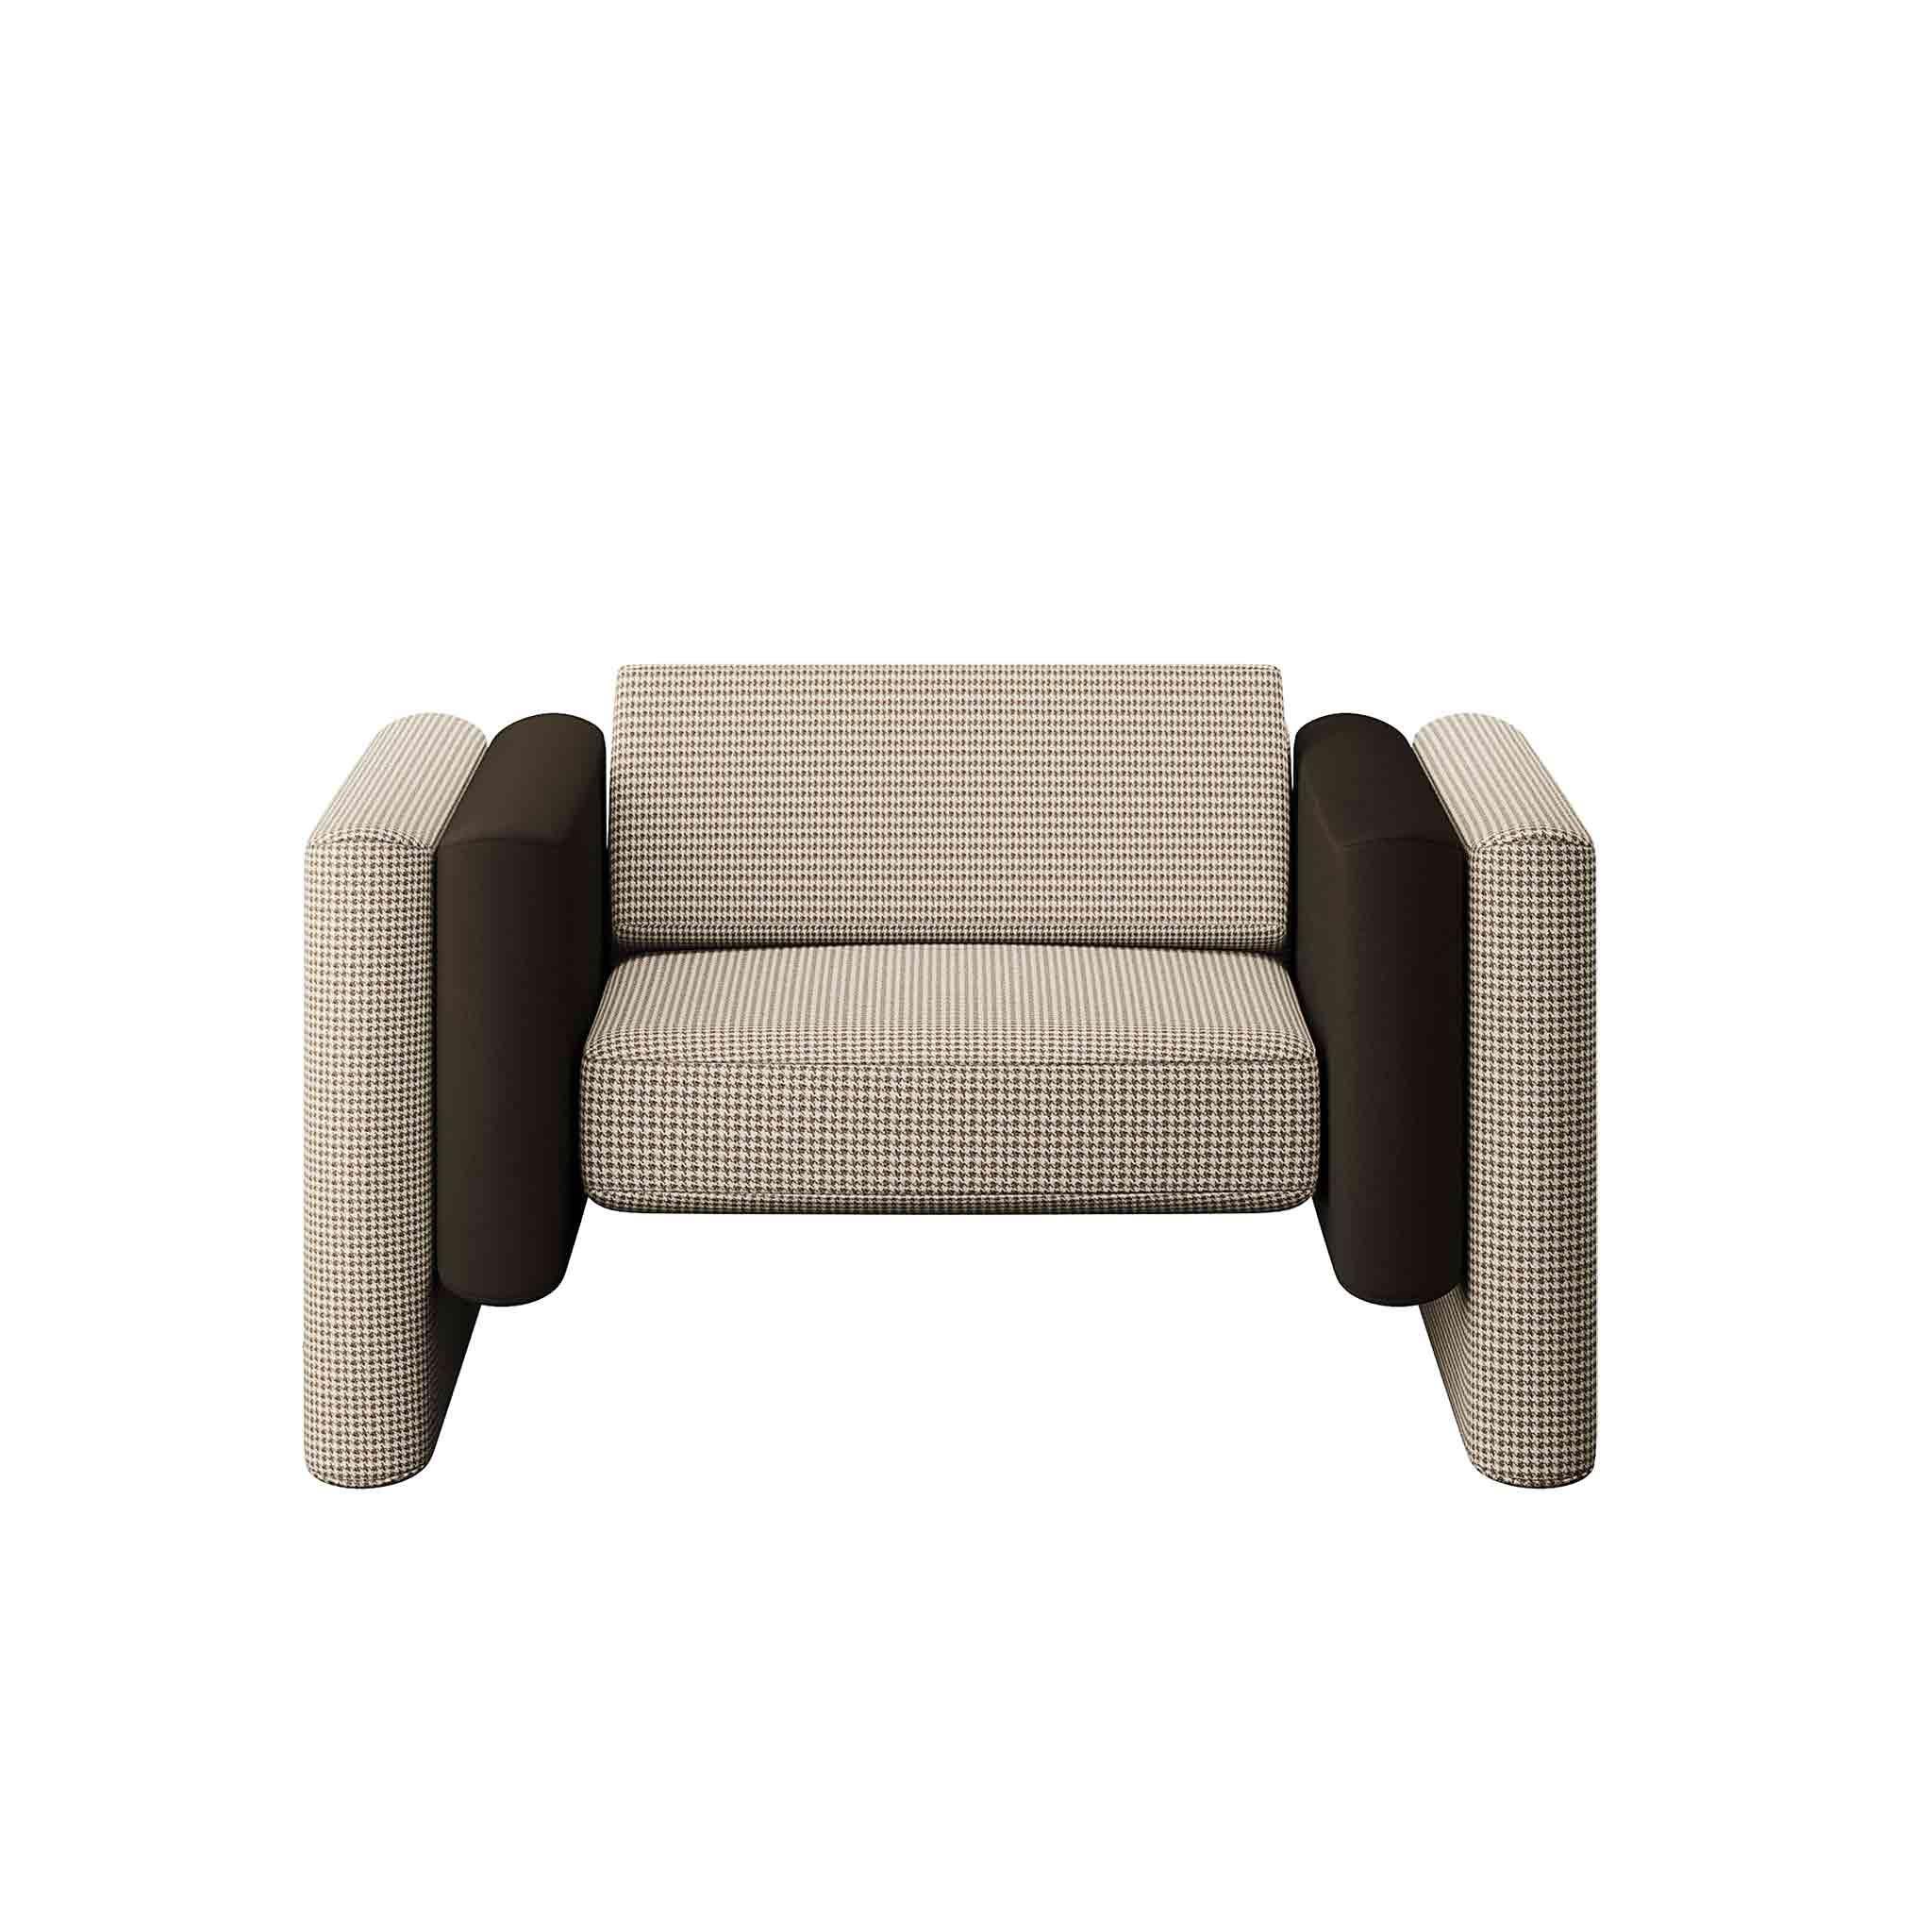 Der Sessel Lisola ist ein luxuriöses Sitzmöbel. Ein eklektischer Sessel, der durch das raffinierteste Design und die feinsten MATERIALIEN zu einem authentischen Luxus-Designstück wird. Er passt perfekt in ein modernes Wohnzimmer und in ein